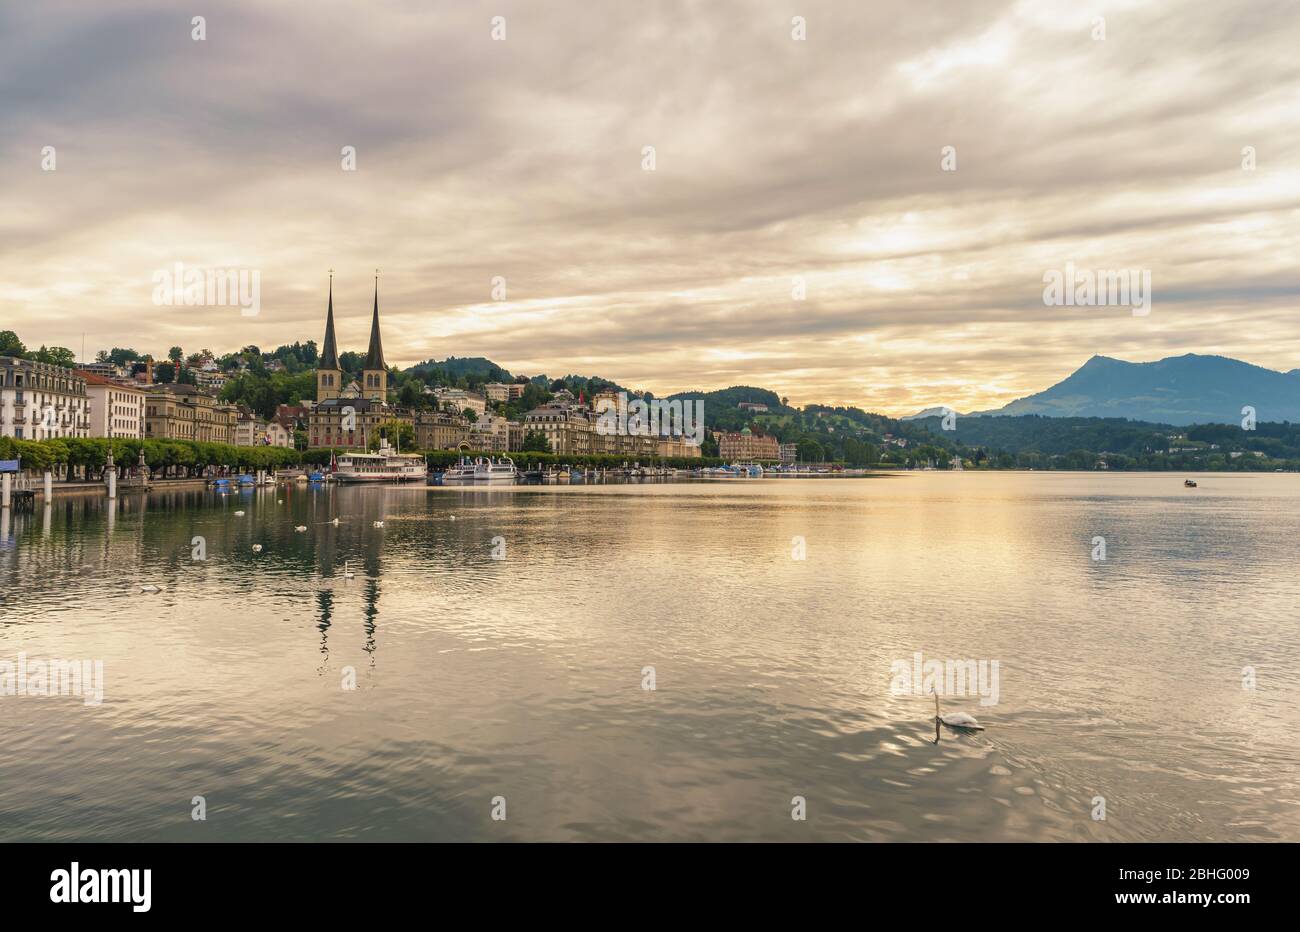 Lucerne (Luzern) Switzerland, city skyline sunrise at Lake Lucerne Stock Photo